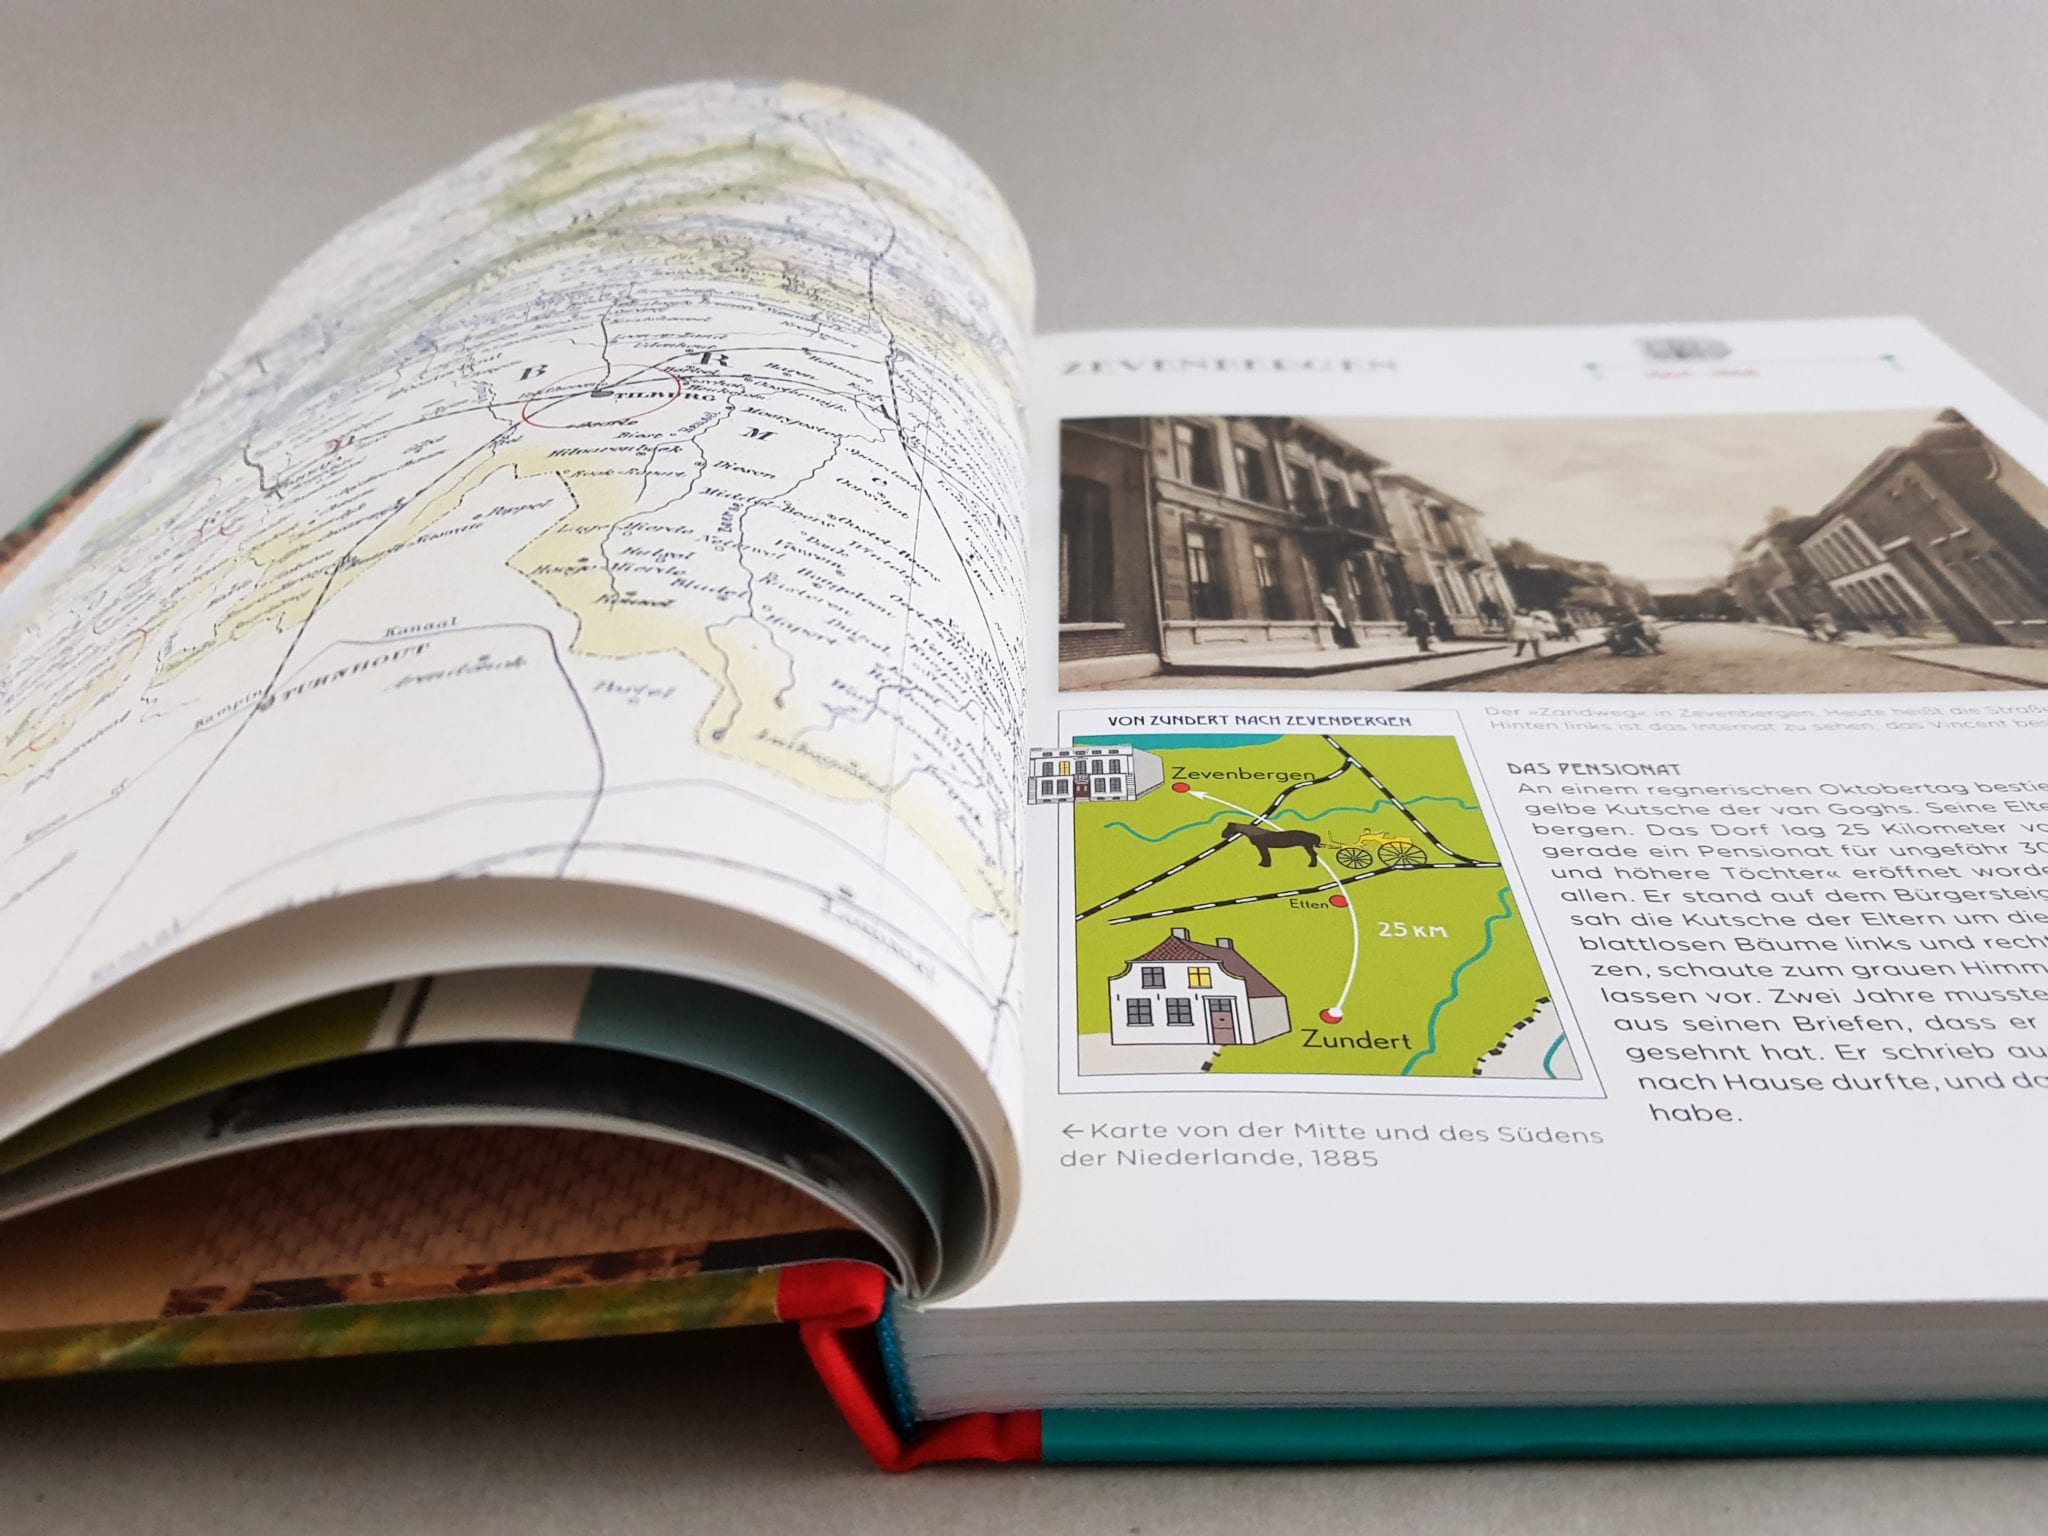 Der große van Gogh Atlas Sieveking Verlag Kunstbücher aufgeschlagene Doppelseite